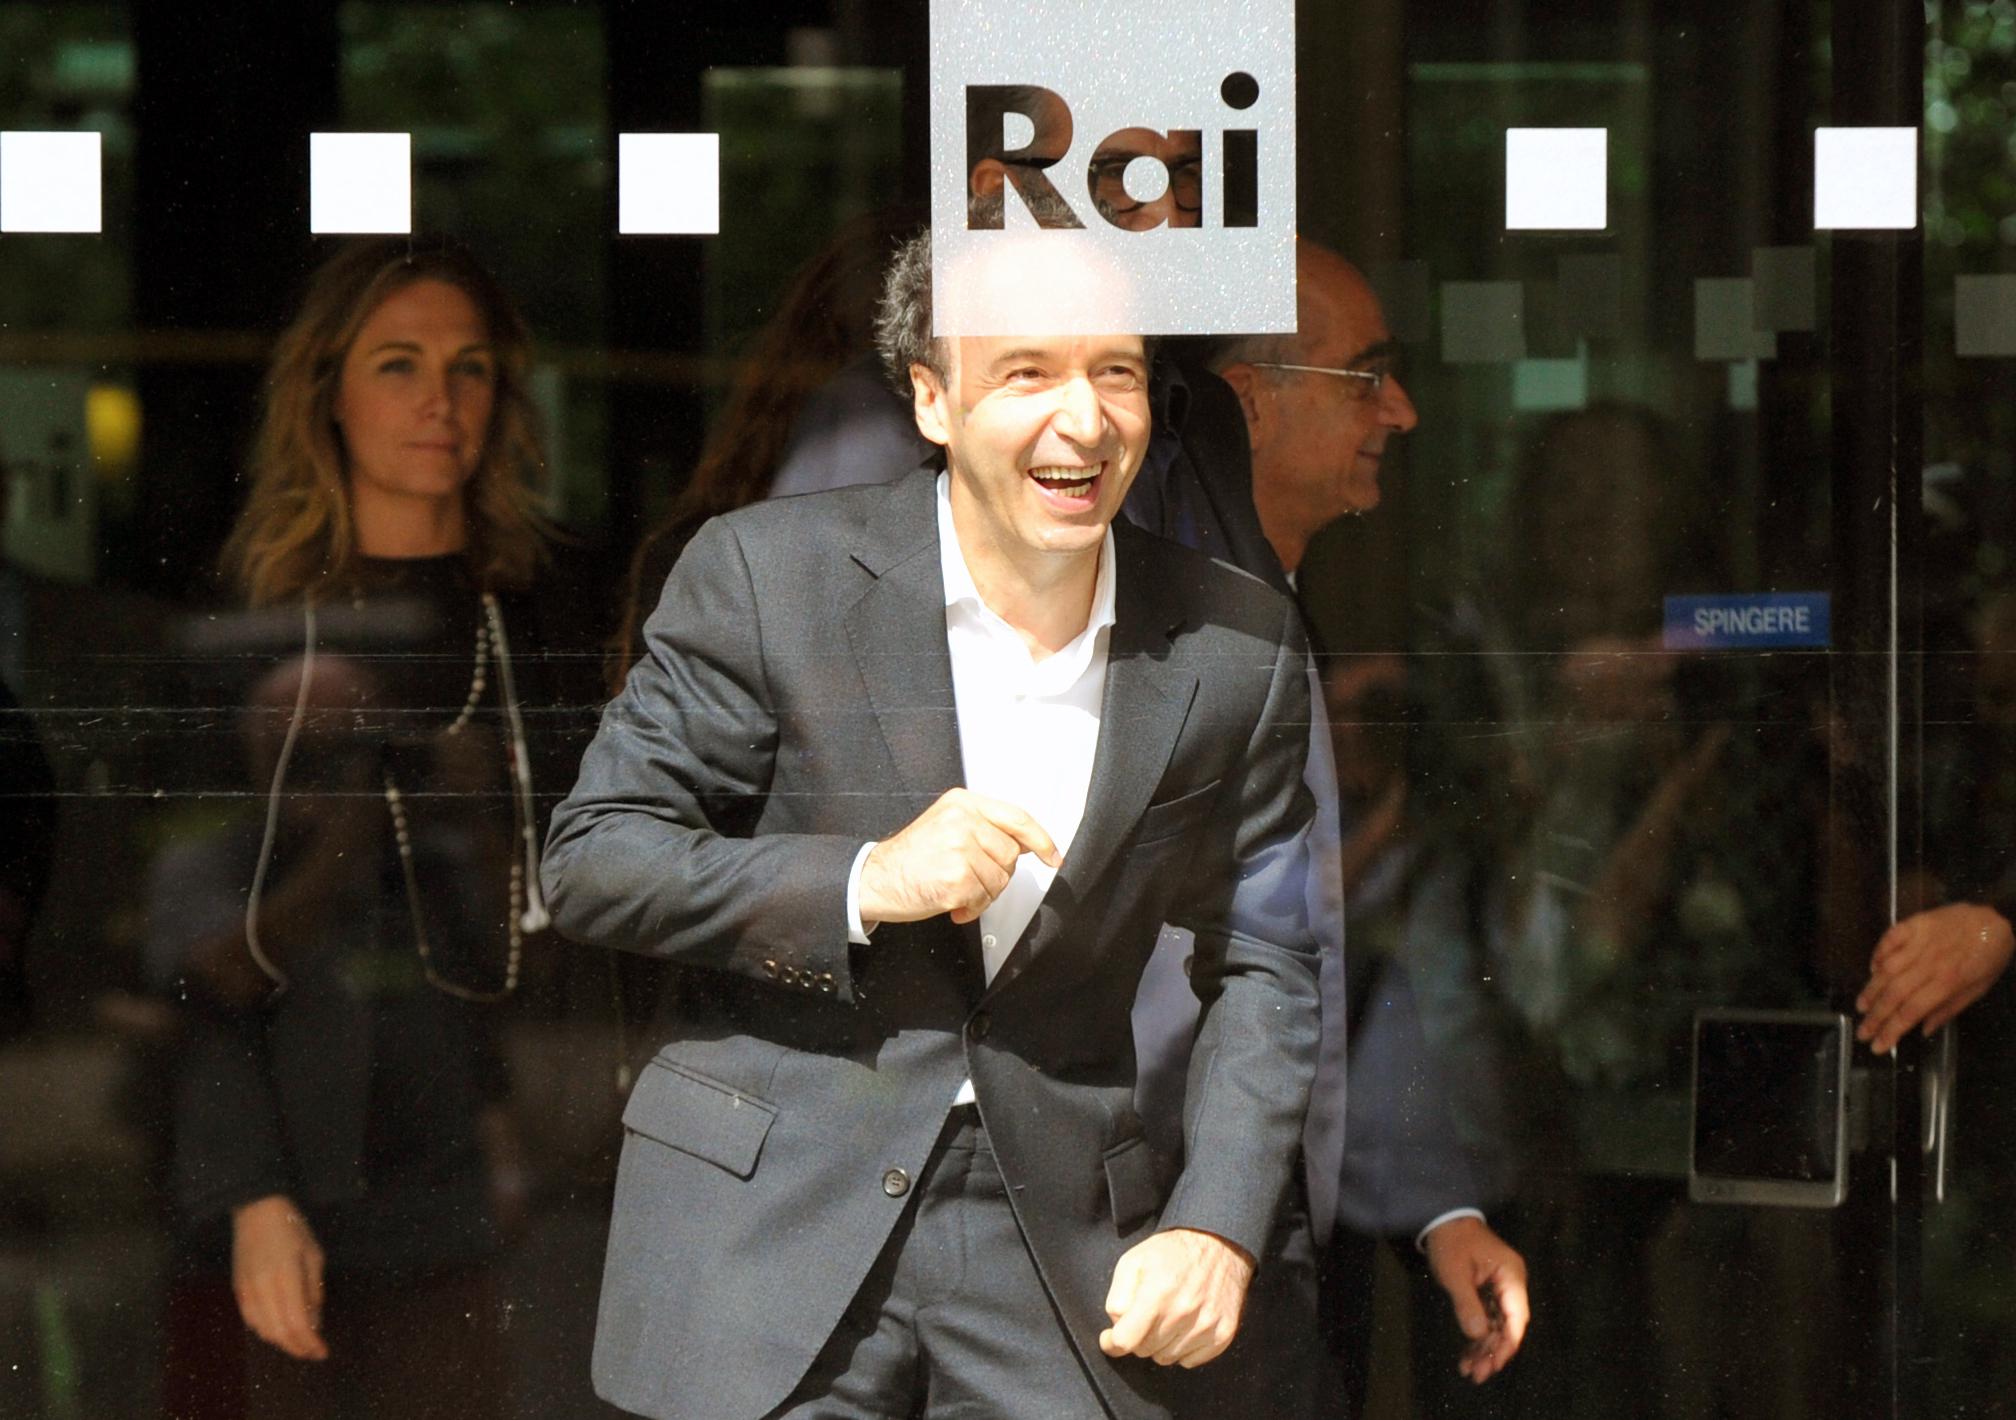 Roma, 13 ottobre 2014. Rai, presentazione de' 'I dieci comandamenti'. Con Roberto Benigni (Foto Adnkronos/Cristiano Camera)